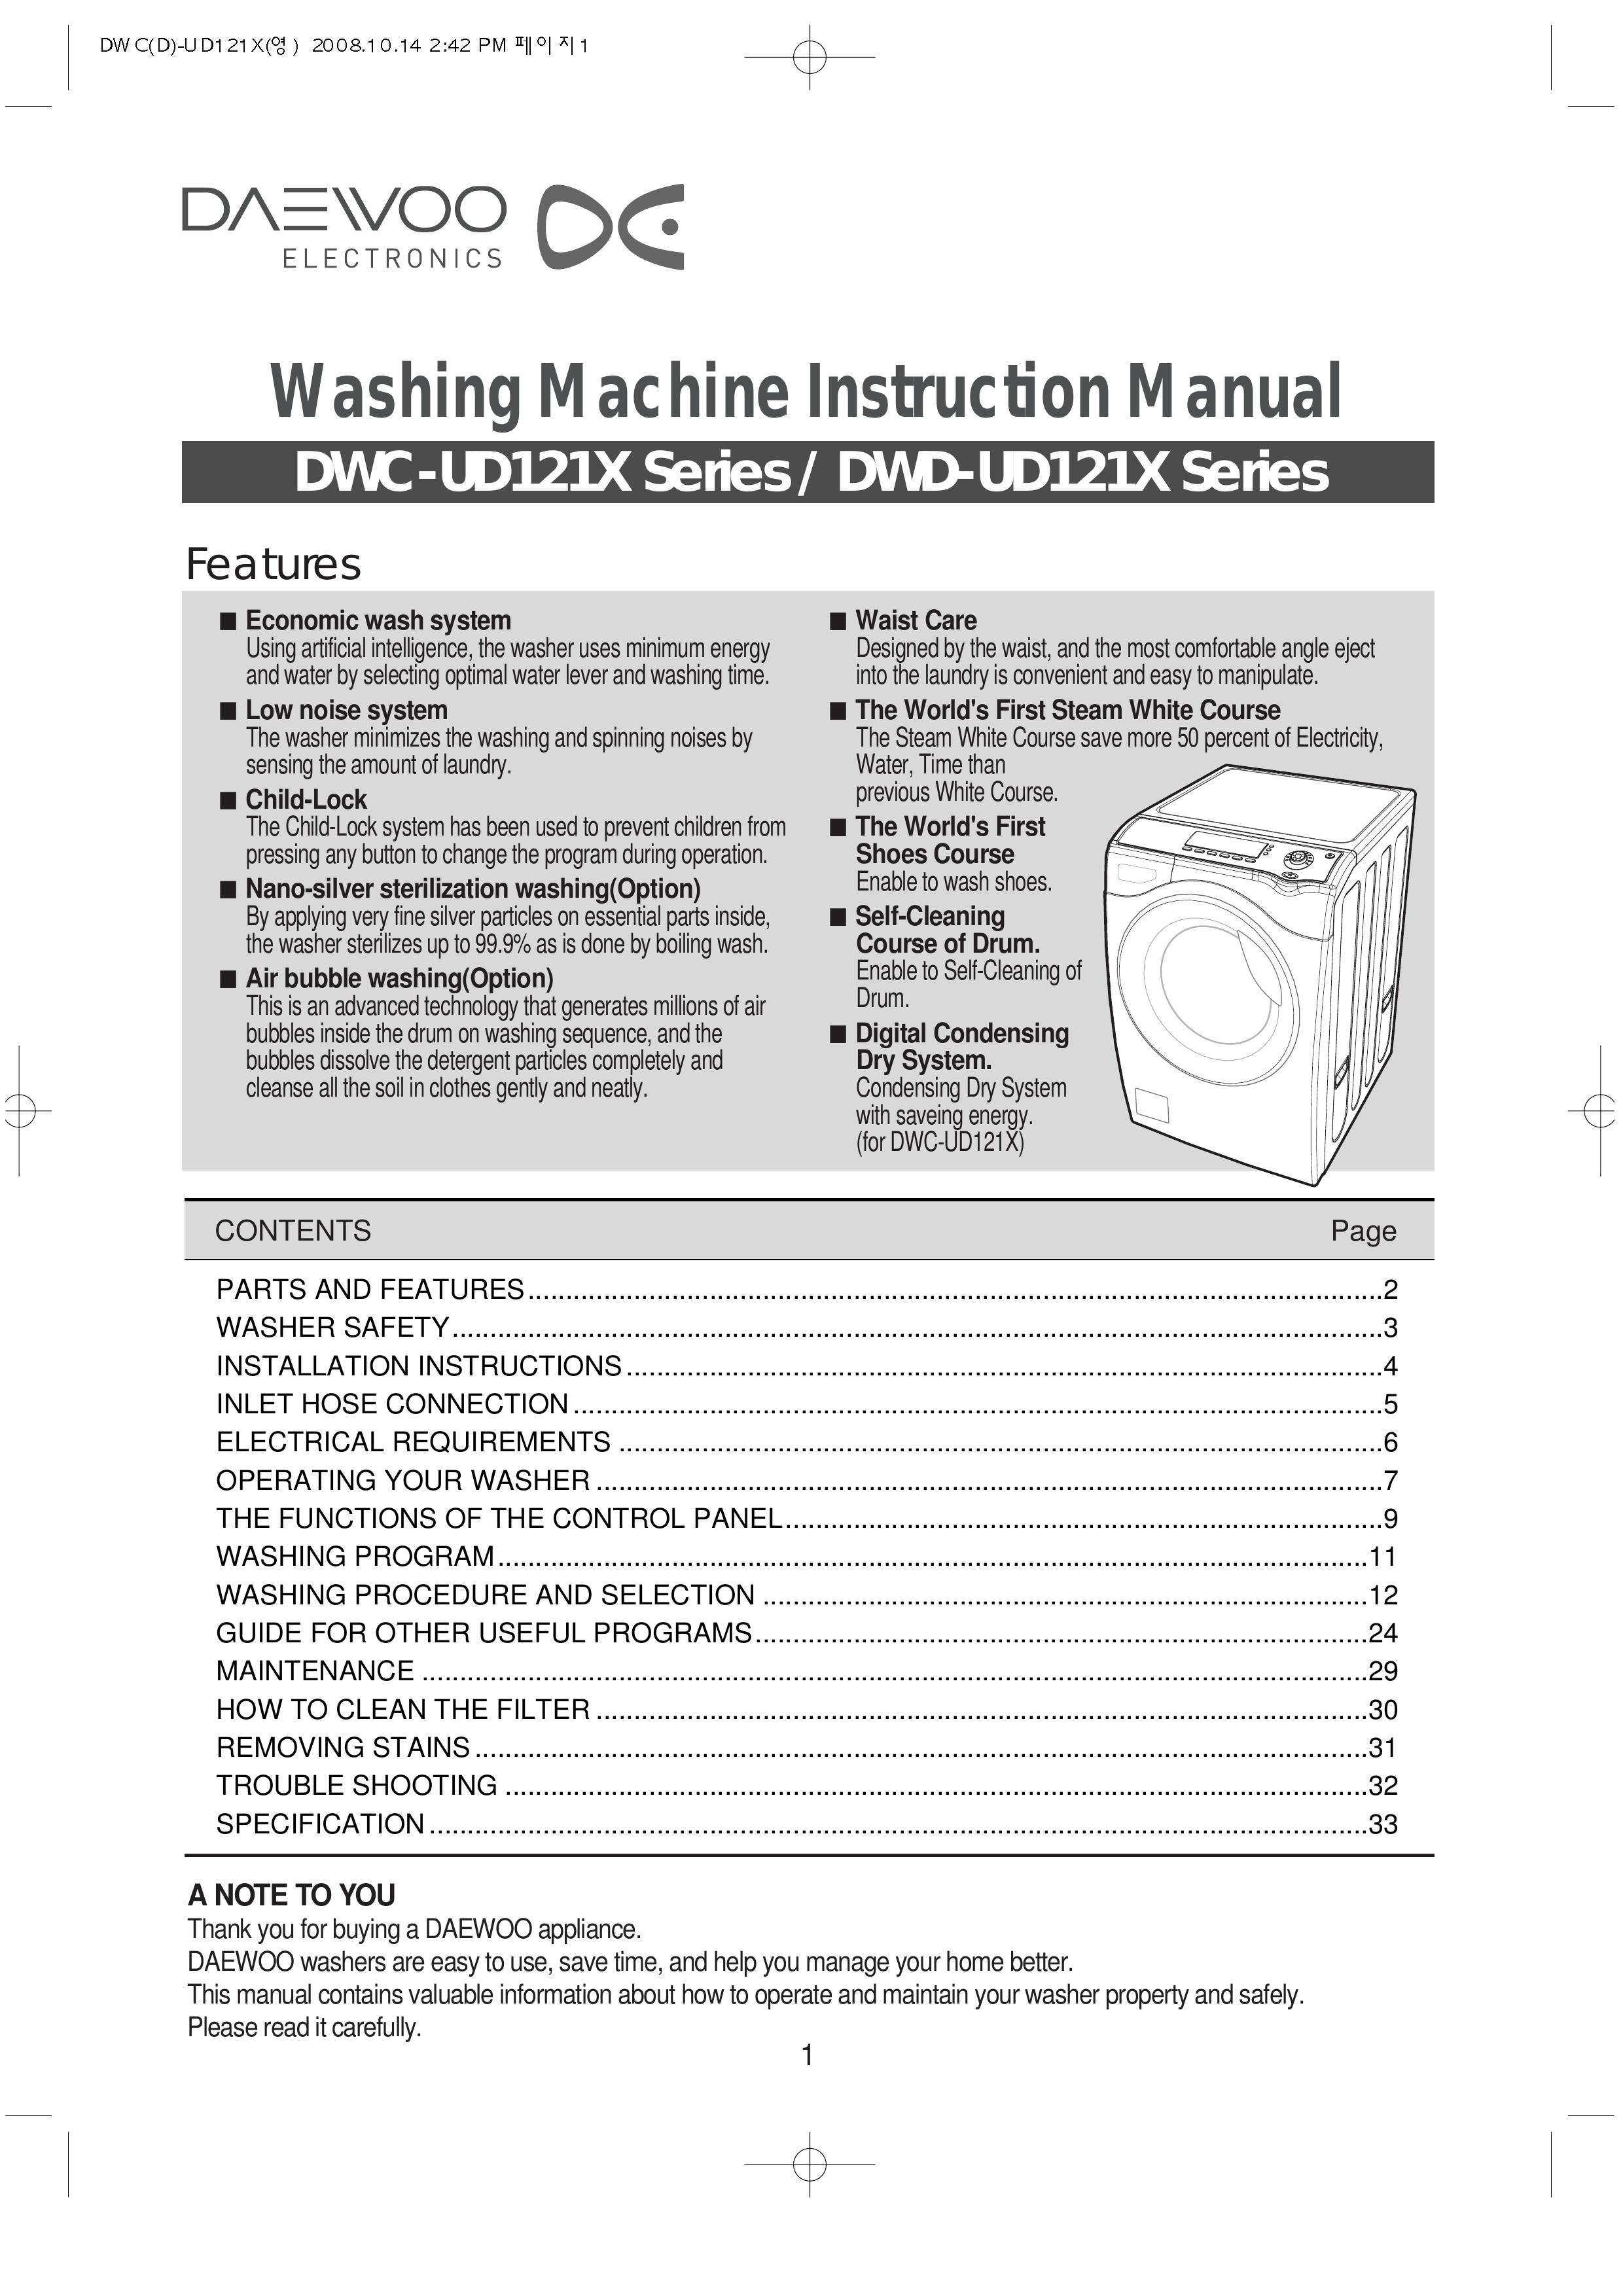 Daewoo DWC-UD121X Washer User Manual